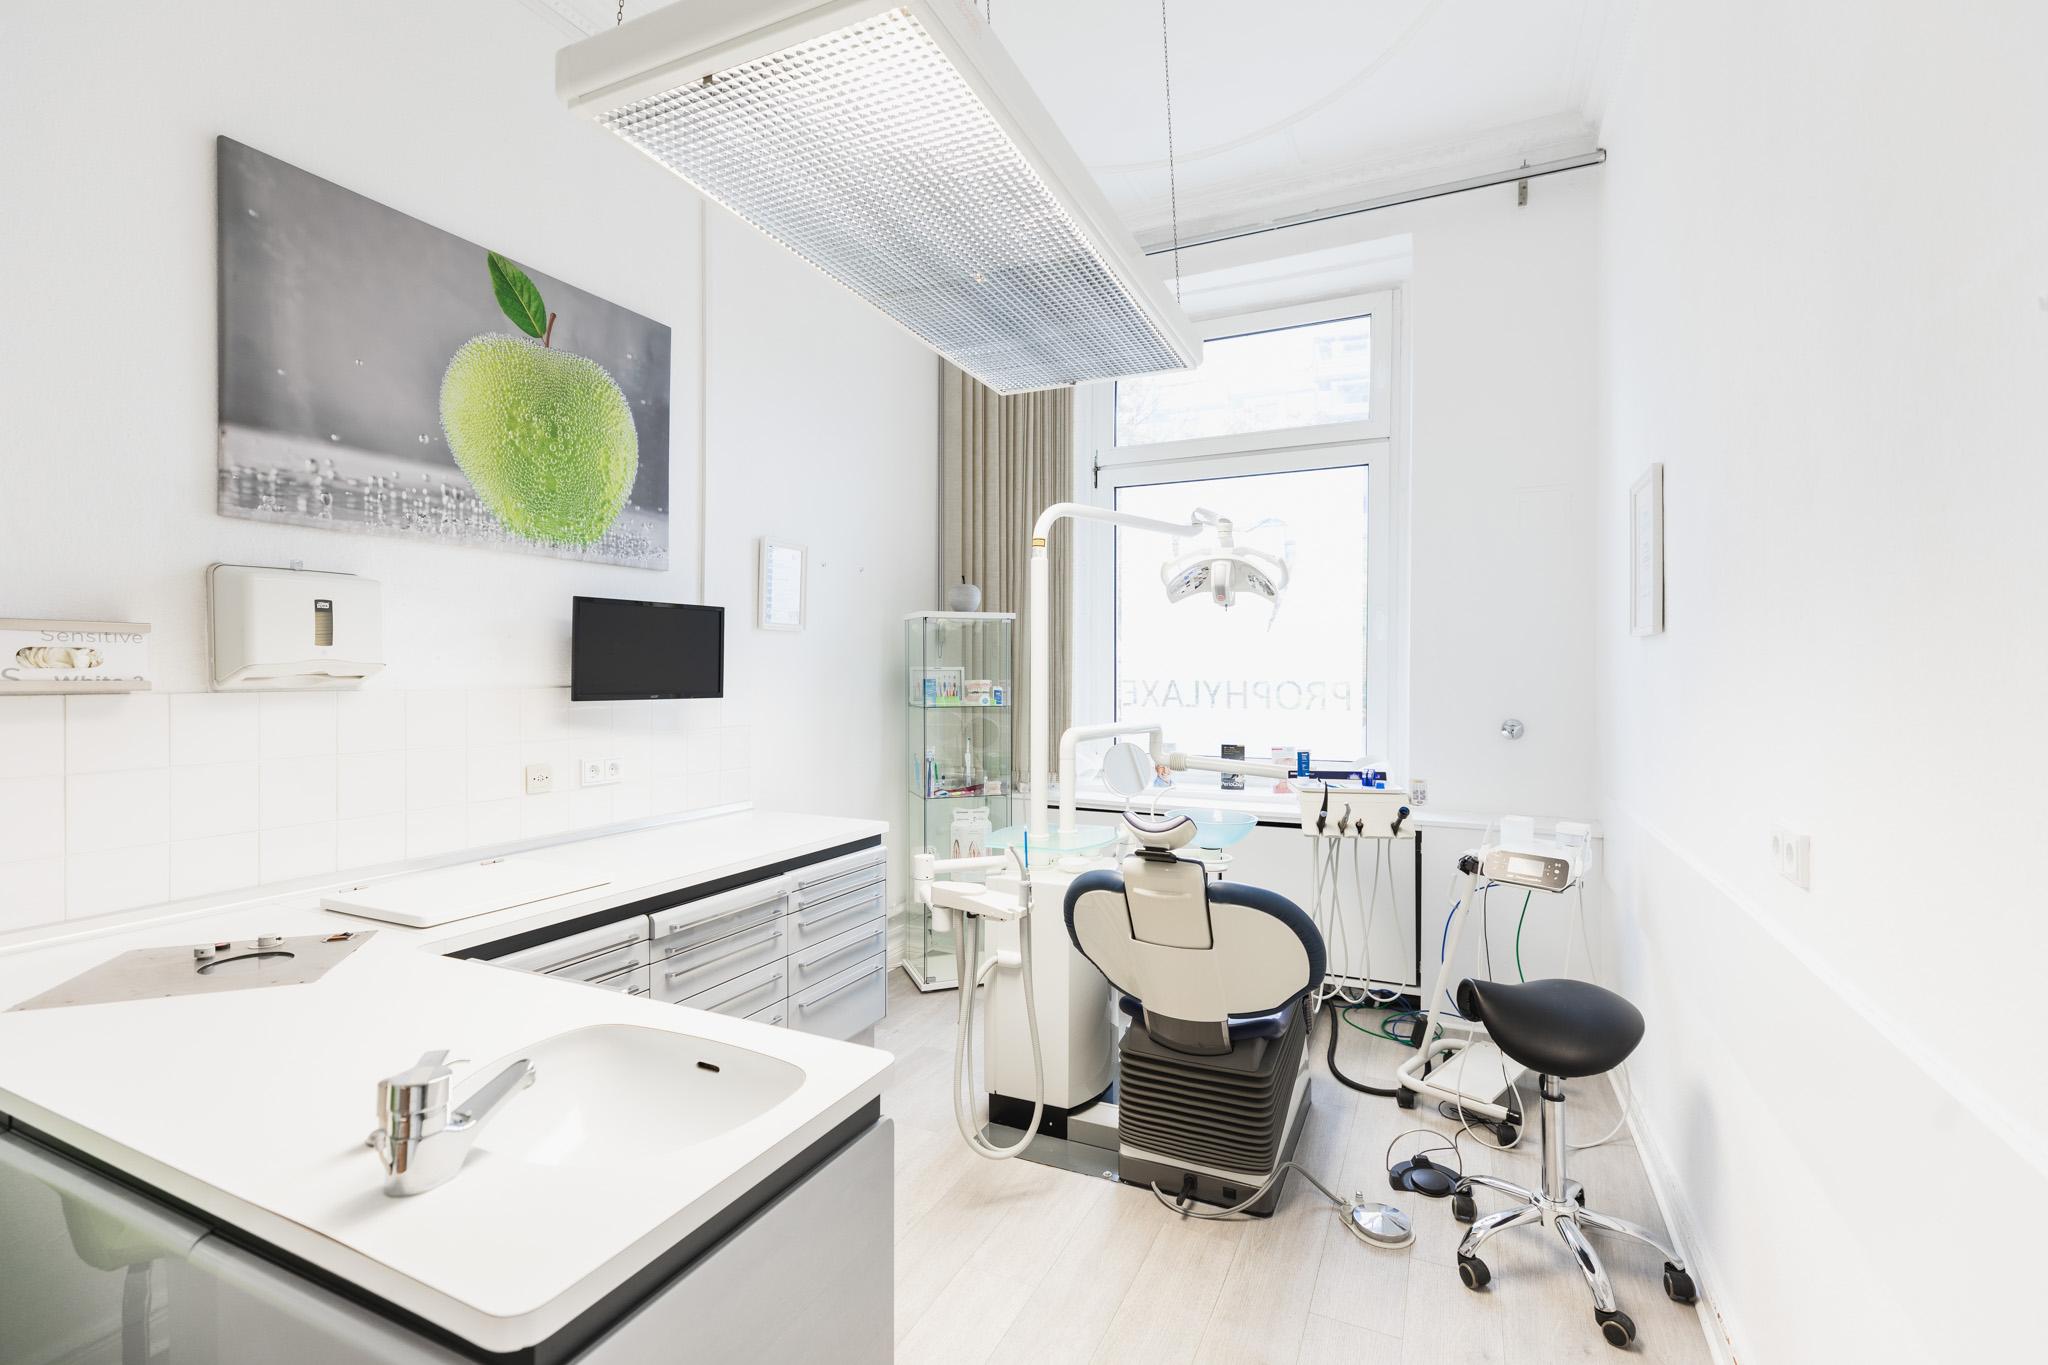 Zahnarztpraxis Marvin Reuter - Ihr Zahnarzt in Berlin Wilmersdorf, Uhlandstraße 98 in Berlin